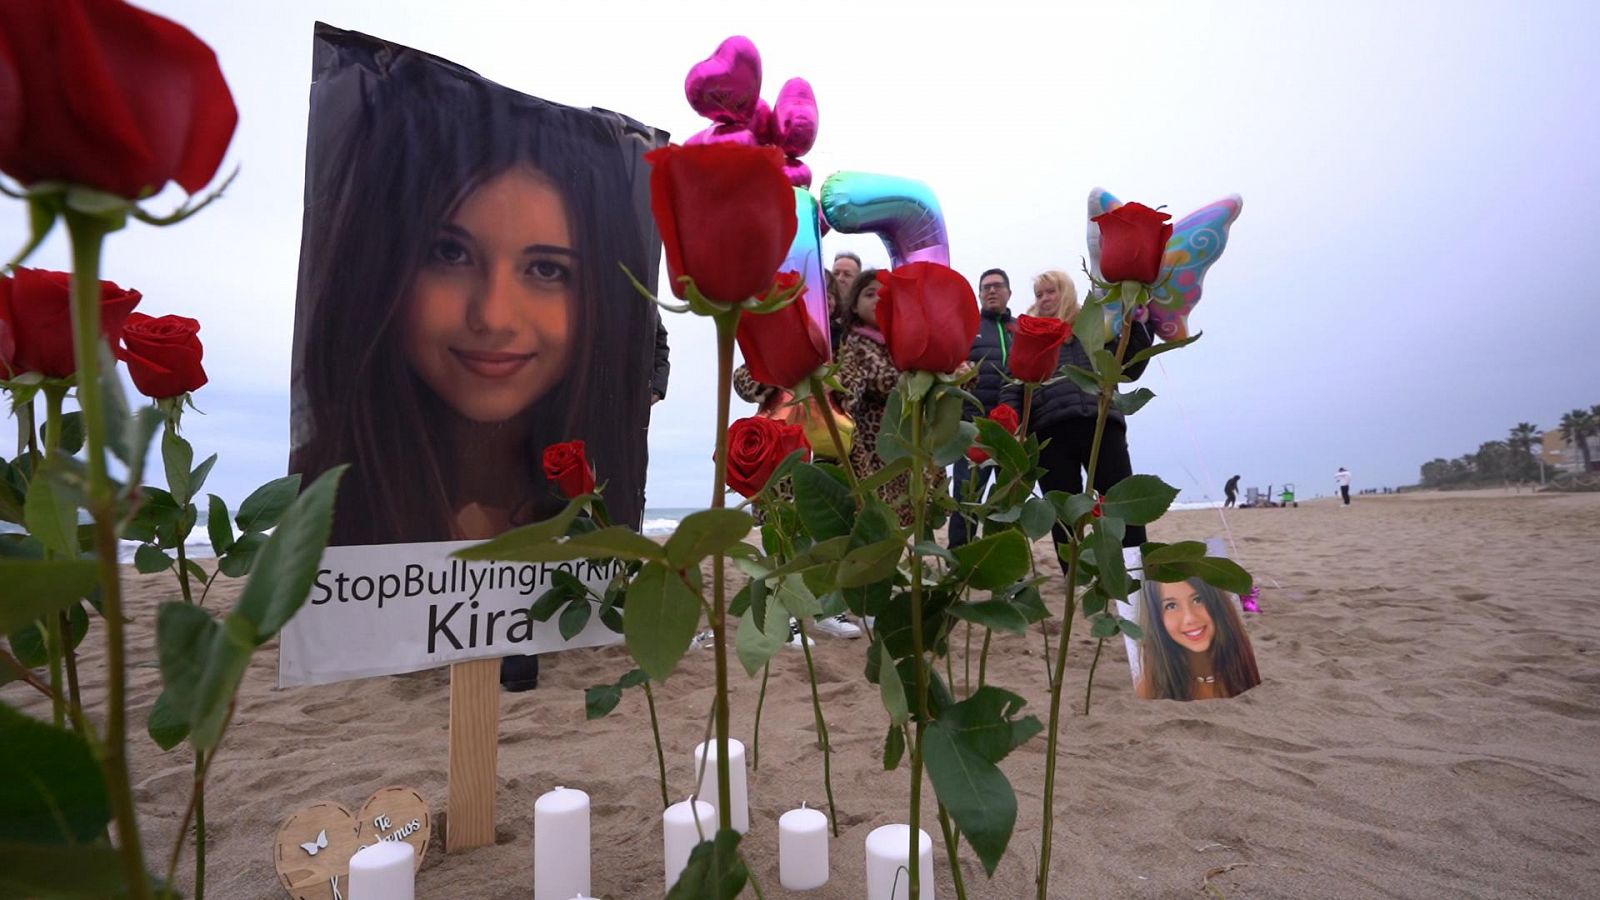 Fotos y flores en una playa en recuerdo de una adolescente fallecida.